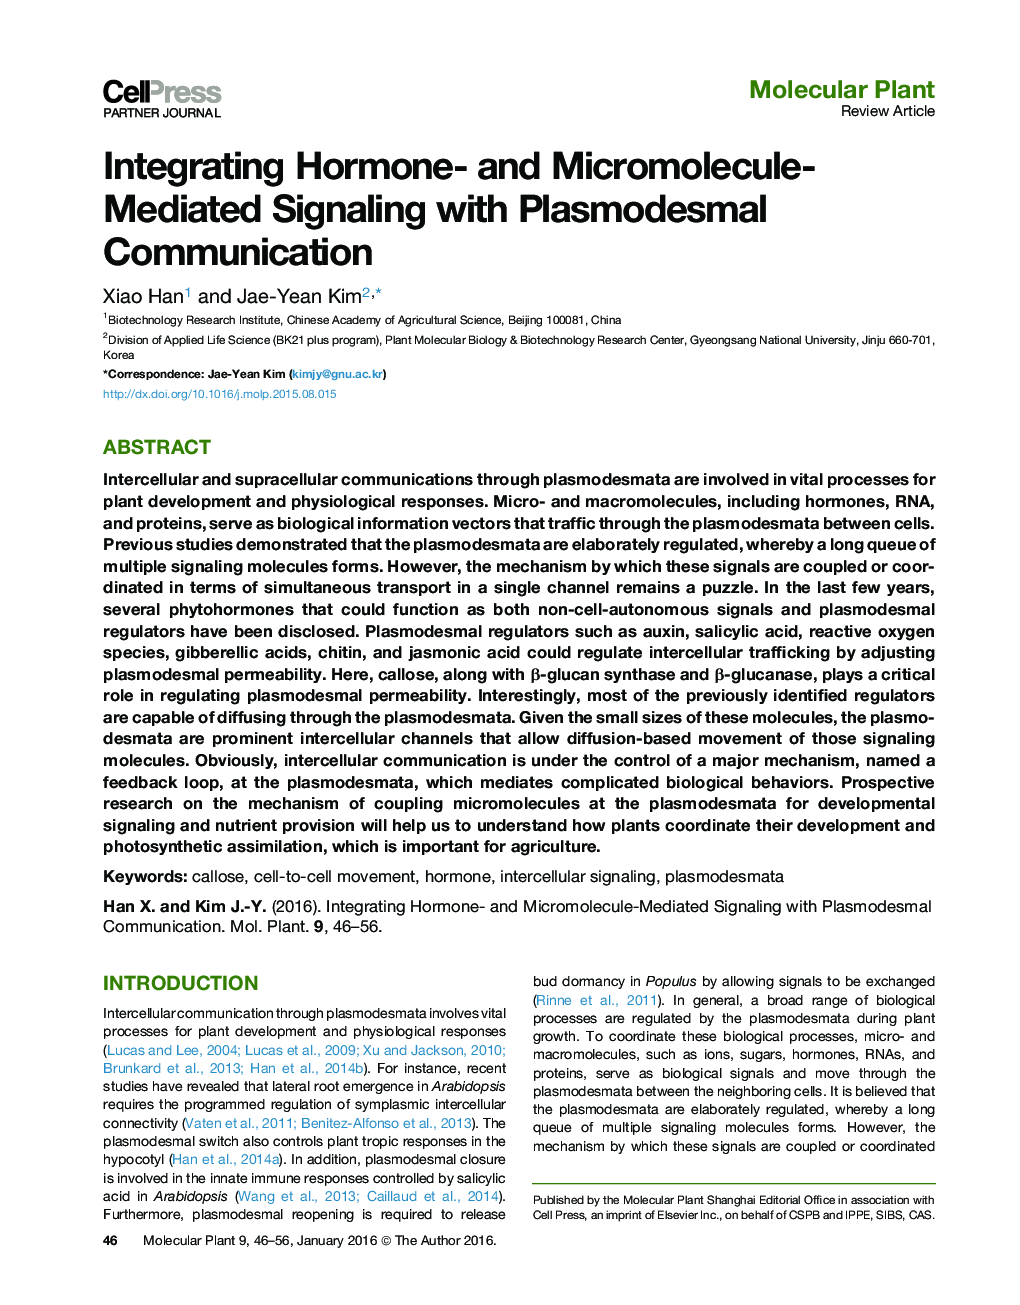 همگن سازی هورمون و سیگنالینگ مرتبط با میکرومولکول با ارتباط پلاسمائوزمی 